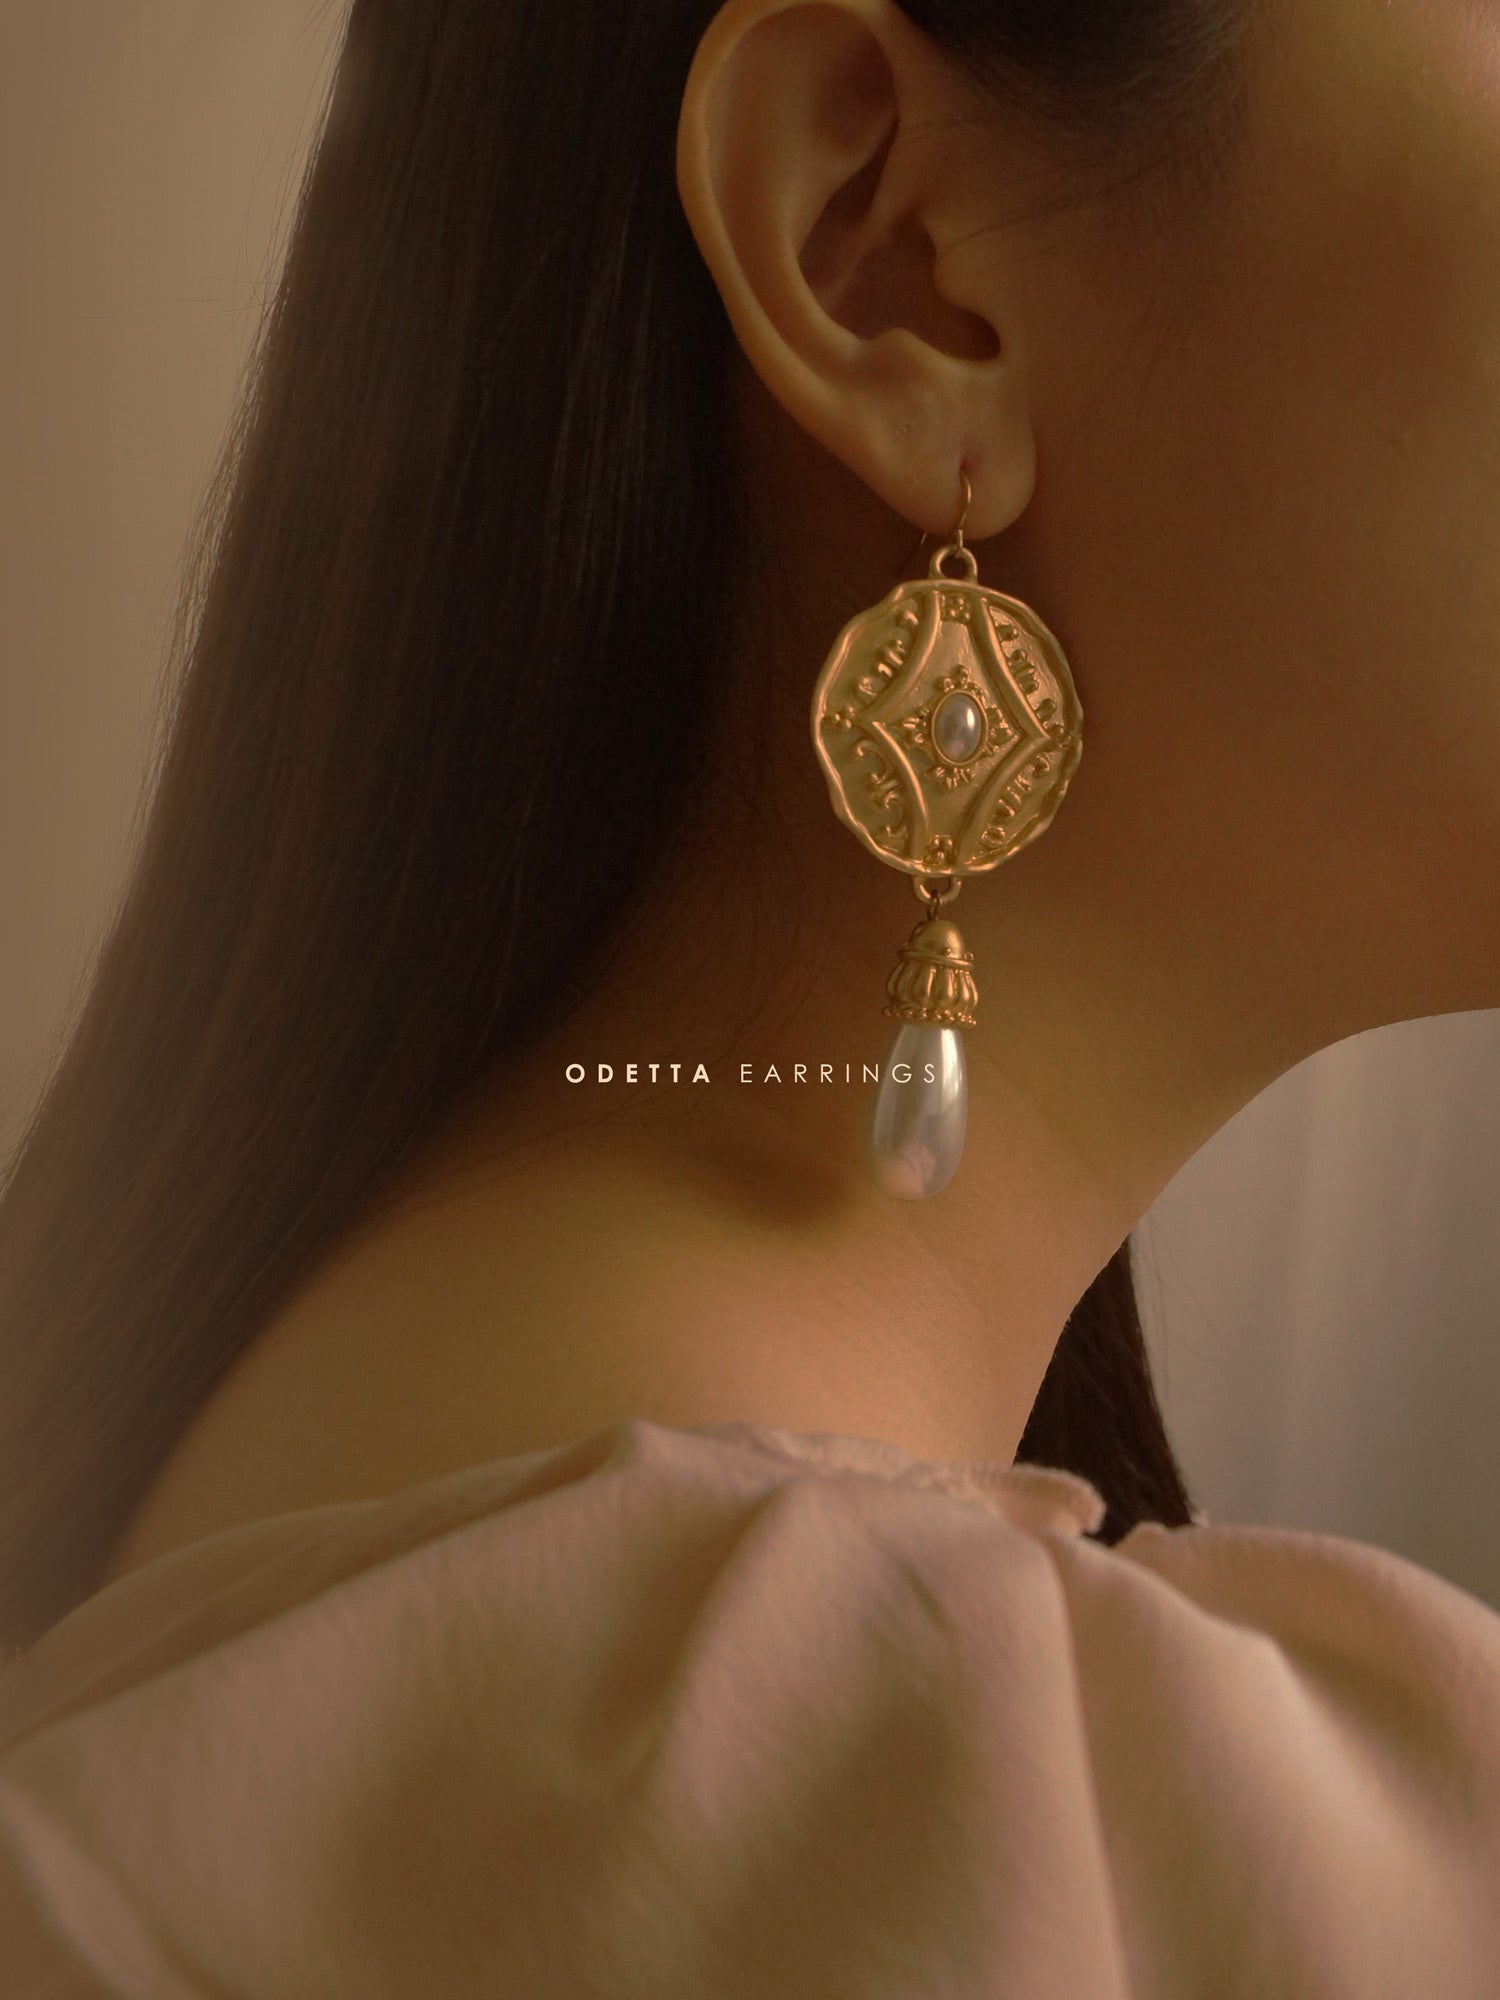 gabi label odetta earrings teaser